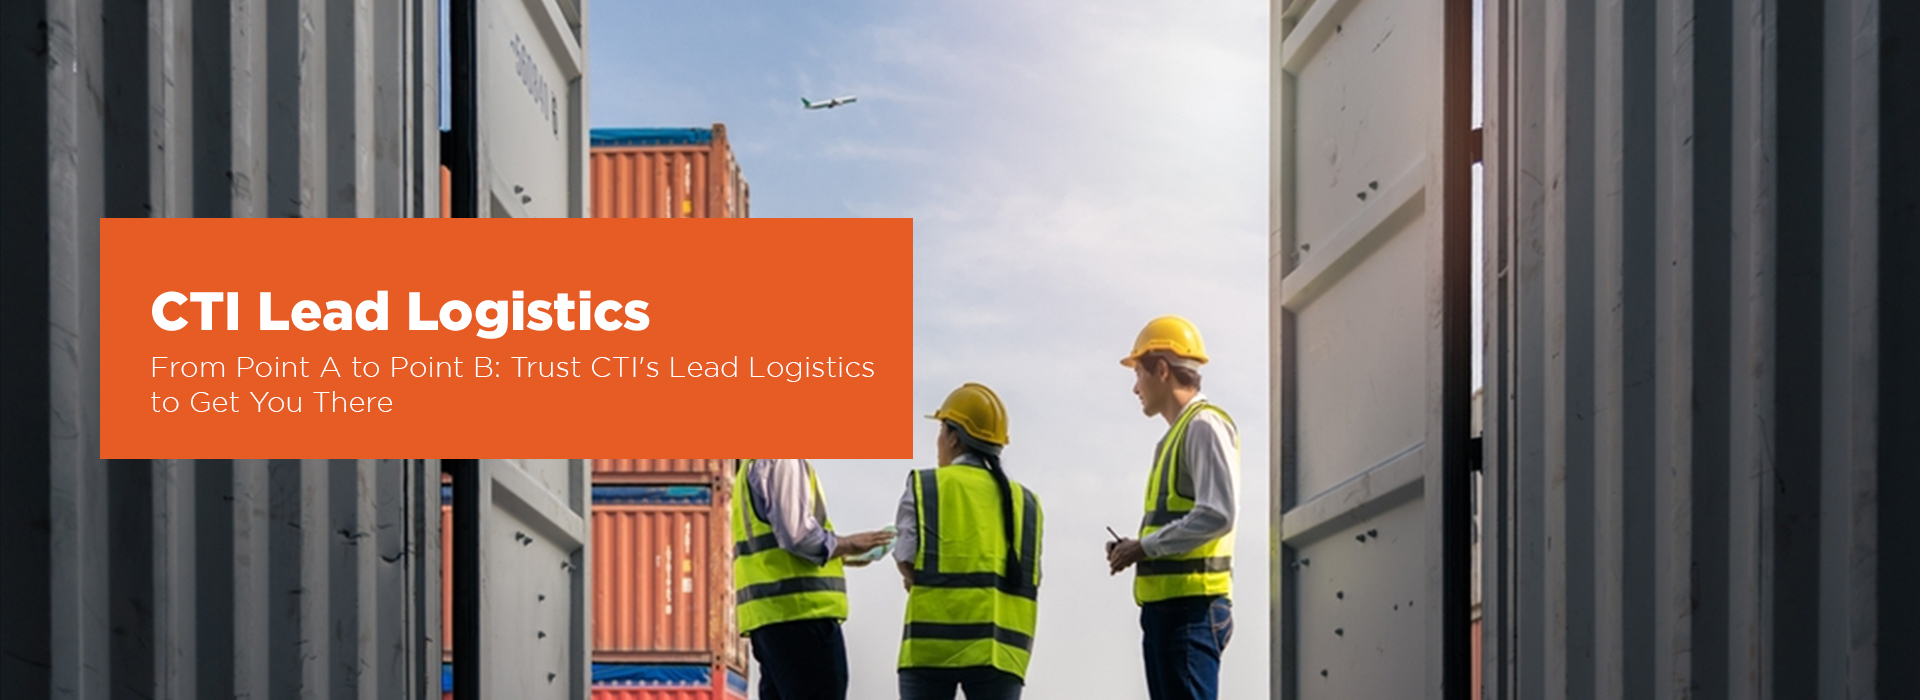 Lead logistics ctii (2)